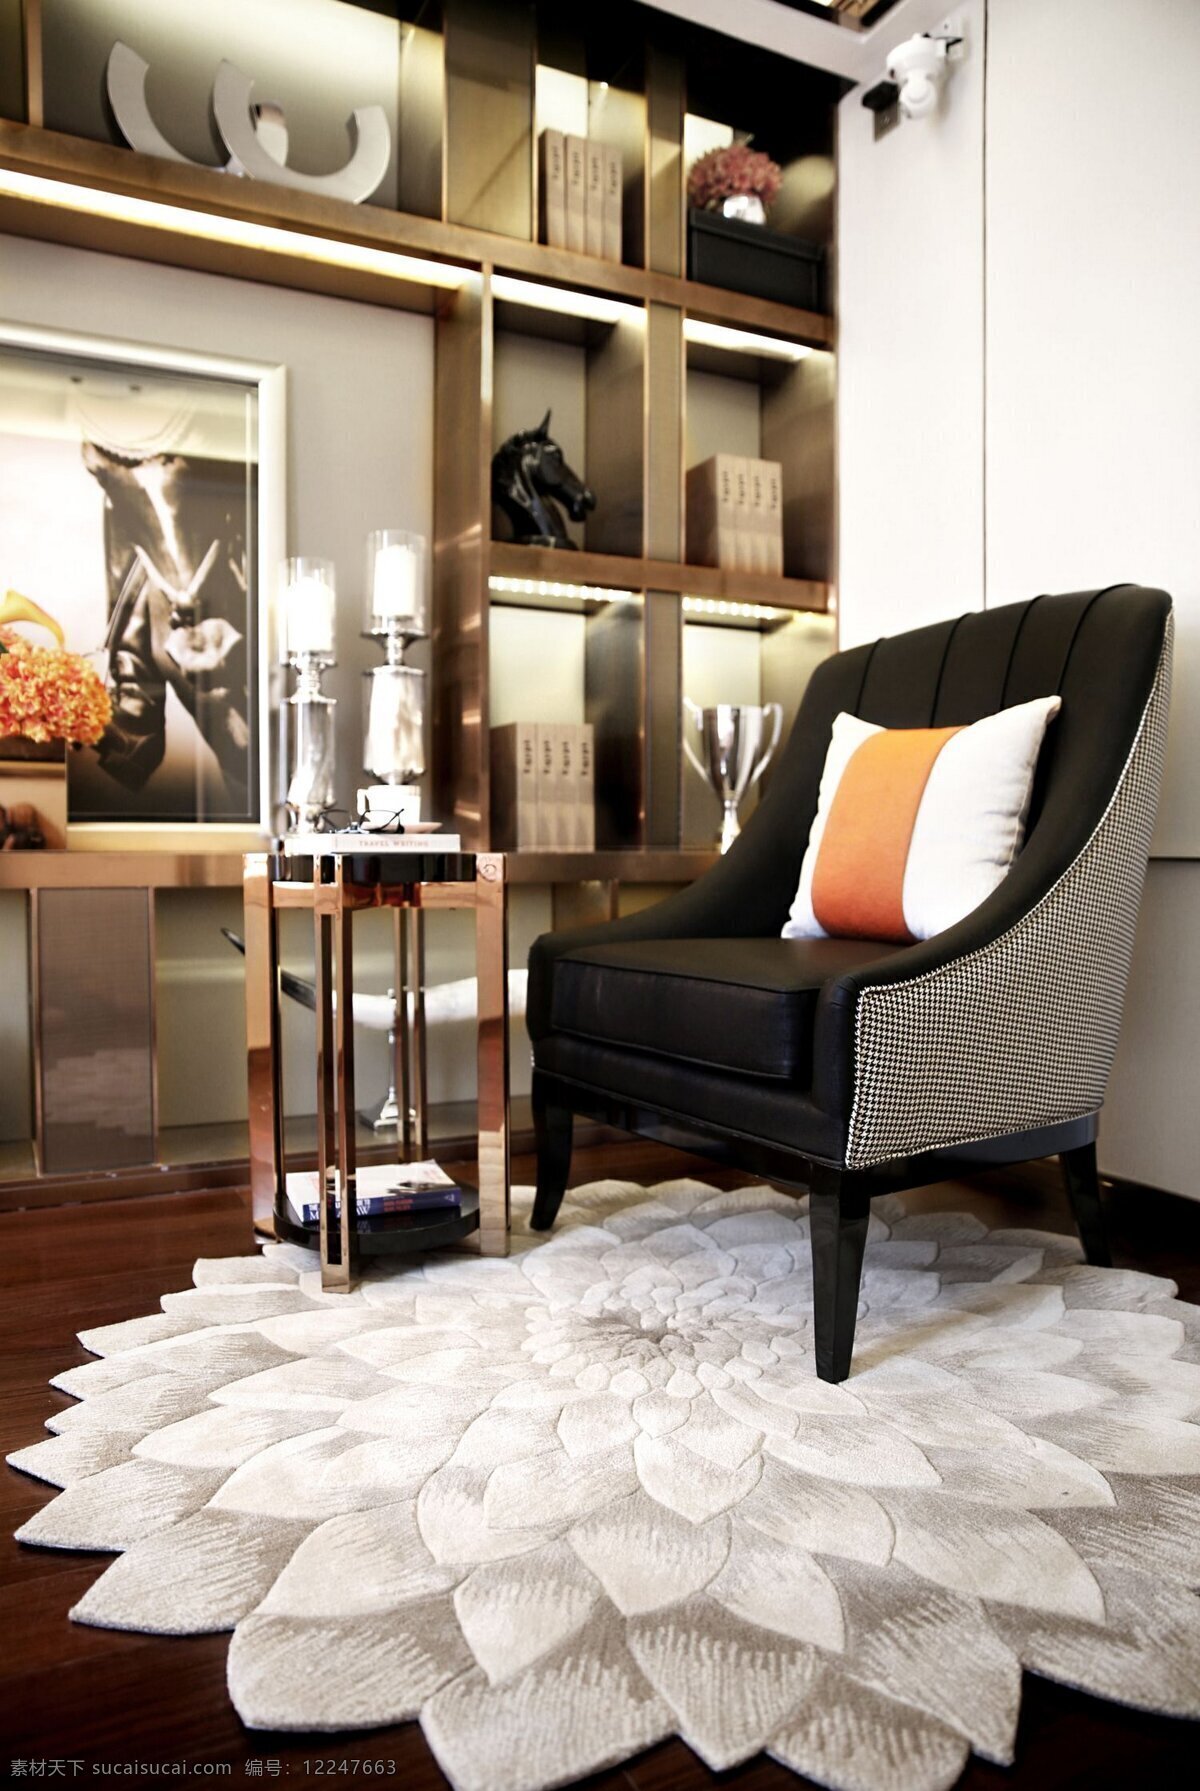 现代 时尚 客厅 花朵 装修 地板 室内装修 效果图 单人沙发椅 展示架 抱枕 客厅装修